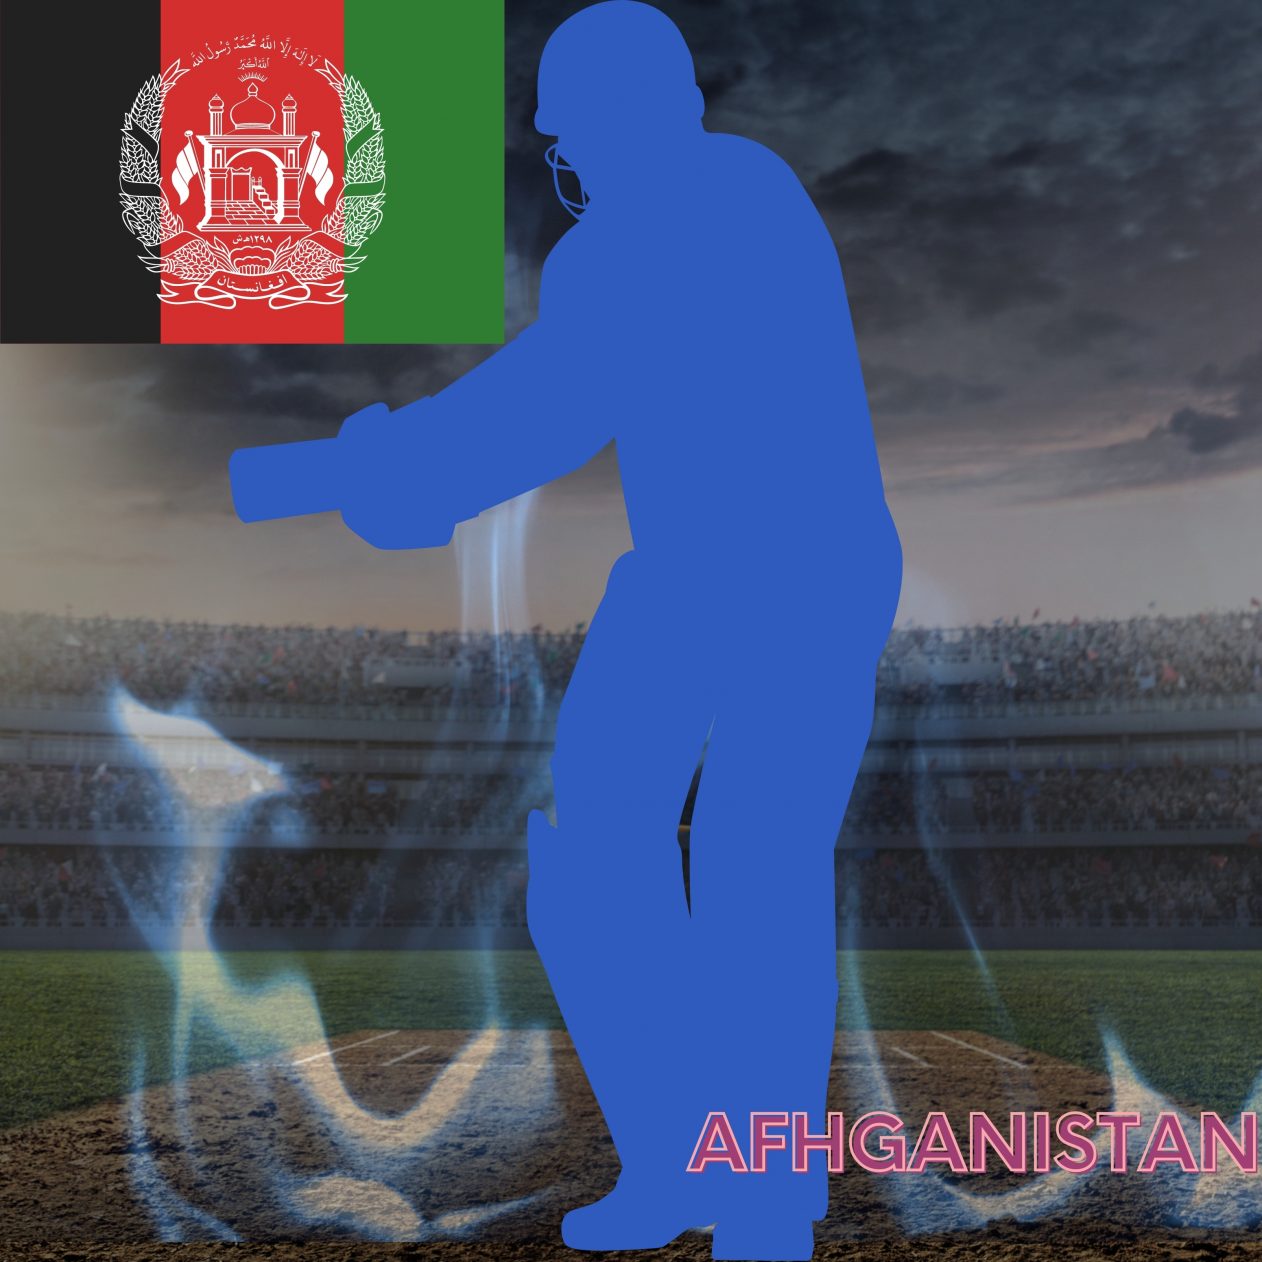 1262x1262 Parallax wallpaper 4k Afhganistan Cricket Stadium iPad Wallpaper 1262x1262 pixels resolution